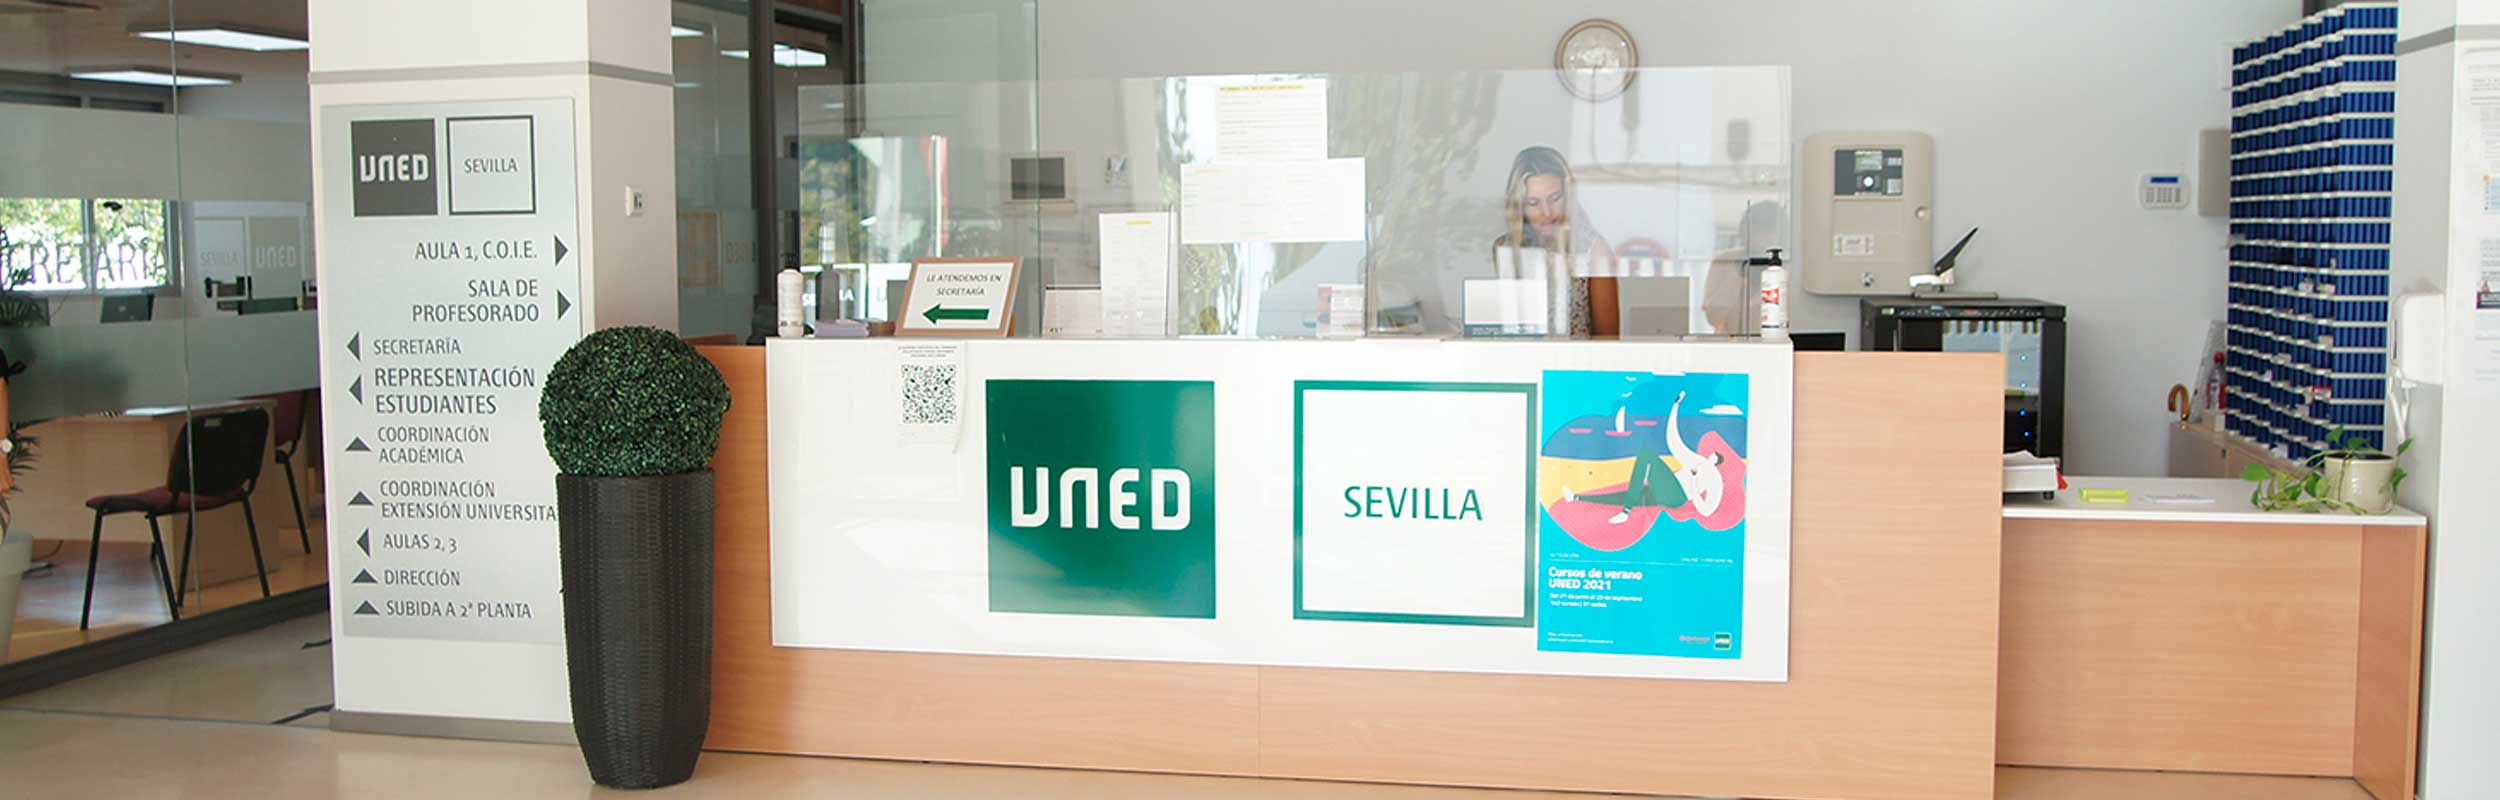 Secretaría del Centro Asociado de Sevilla - UNED